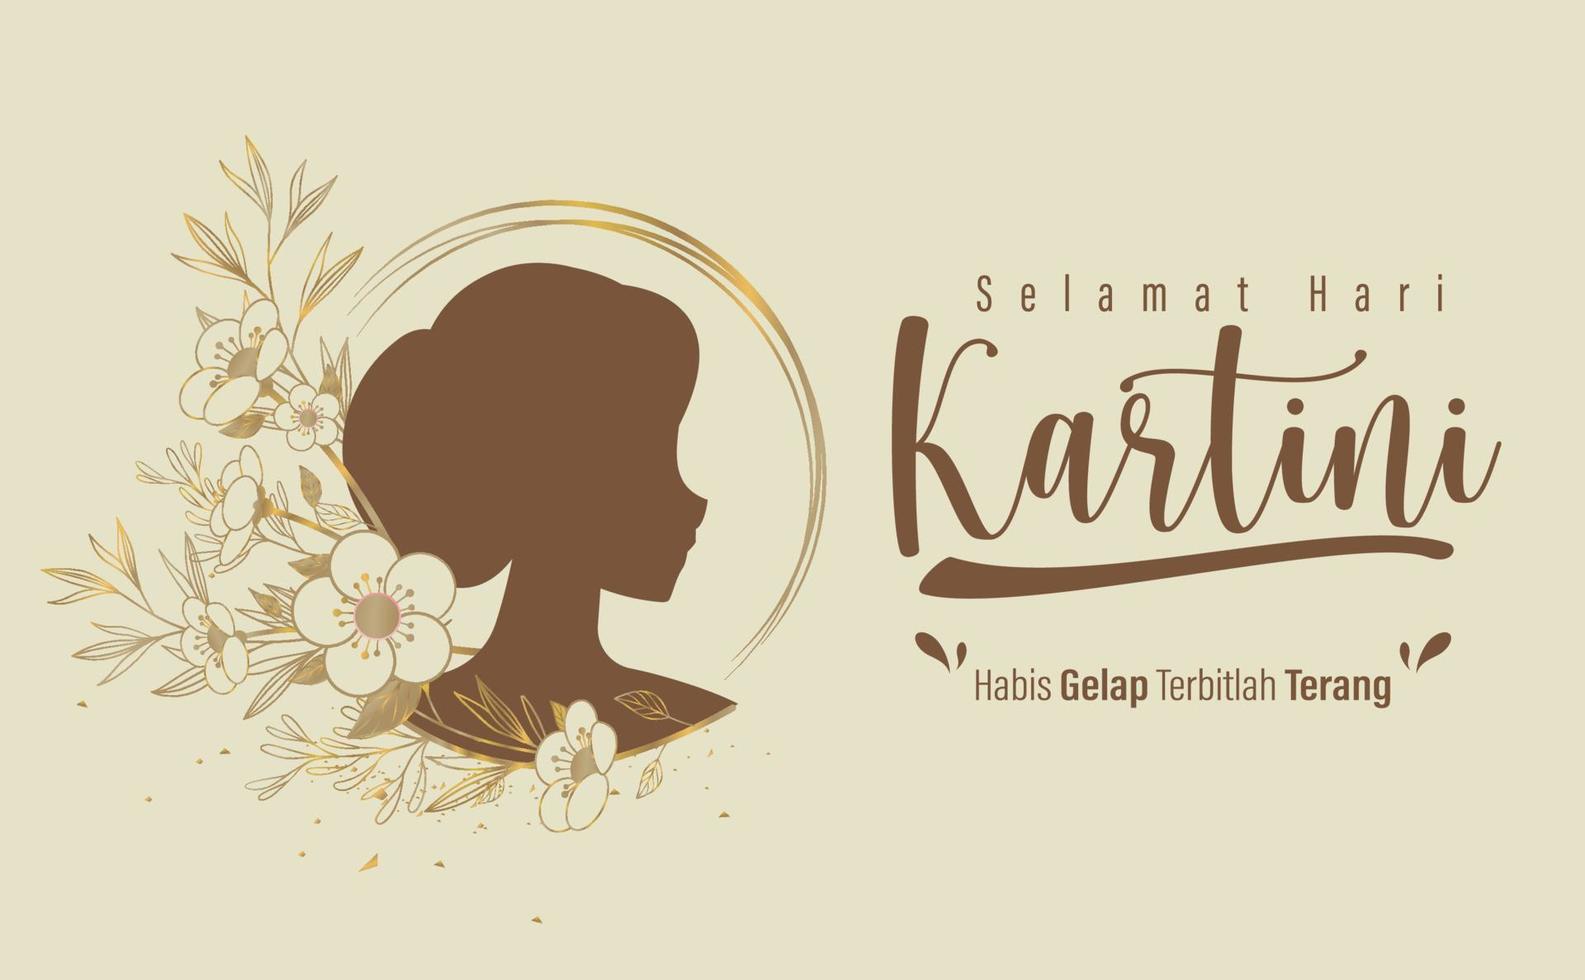 selamat hari kartini significa feliz dia de kartini. kartini é uma heroína indonésia. habis gelap terbitlah terang significa que depois da escuridão vem a luz. ilustração vetorial vetor